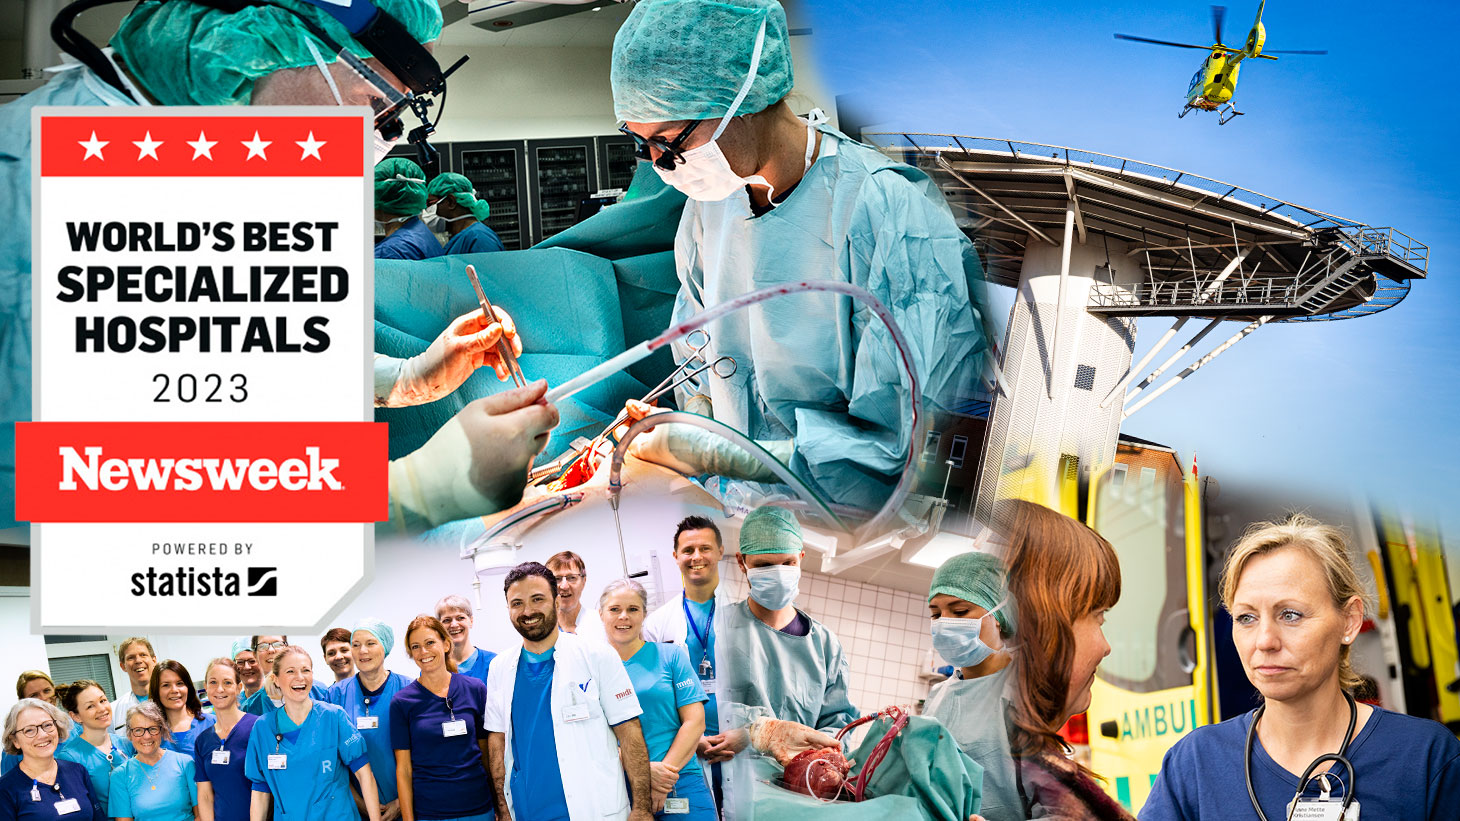 En collage af billeder fra Hjertesygdomme samt logoet for Newsweeks rangering af World's Best Specialized Hospitals